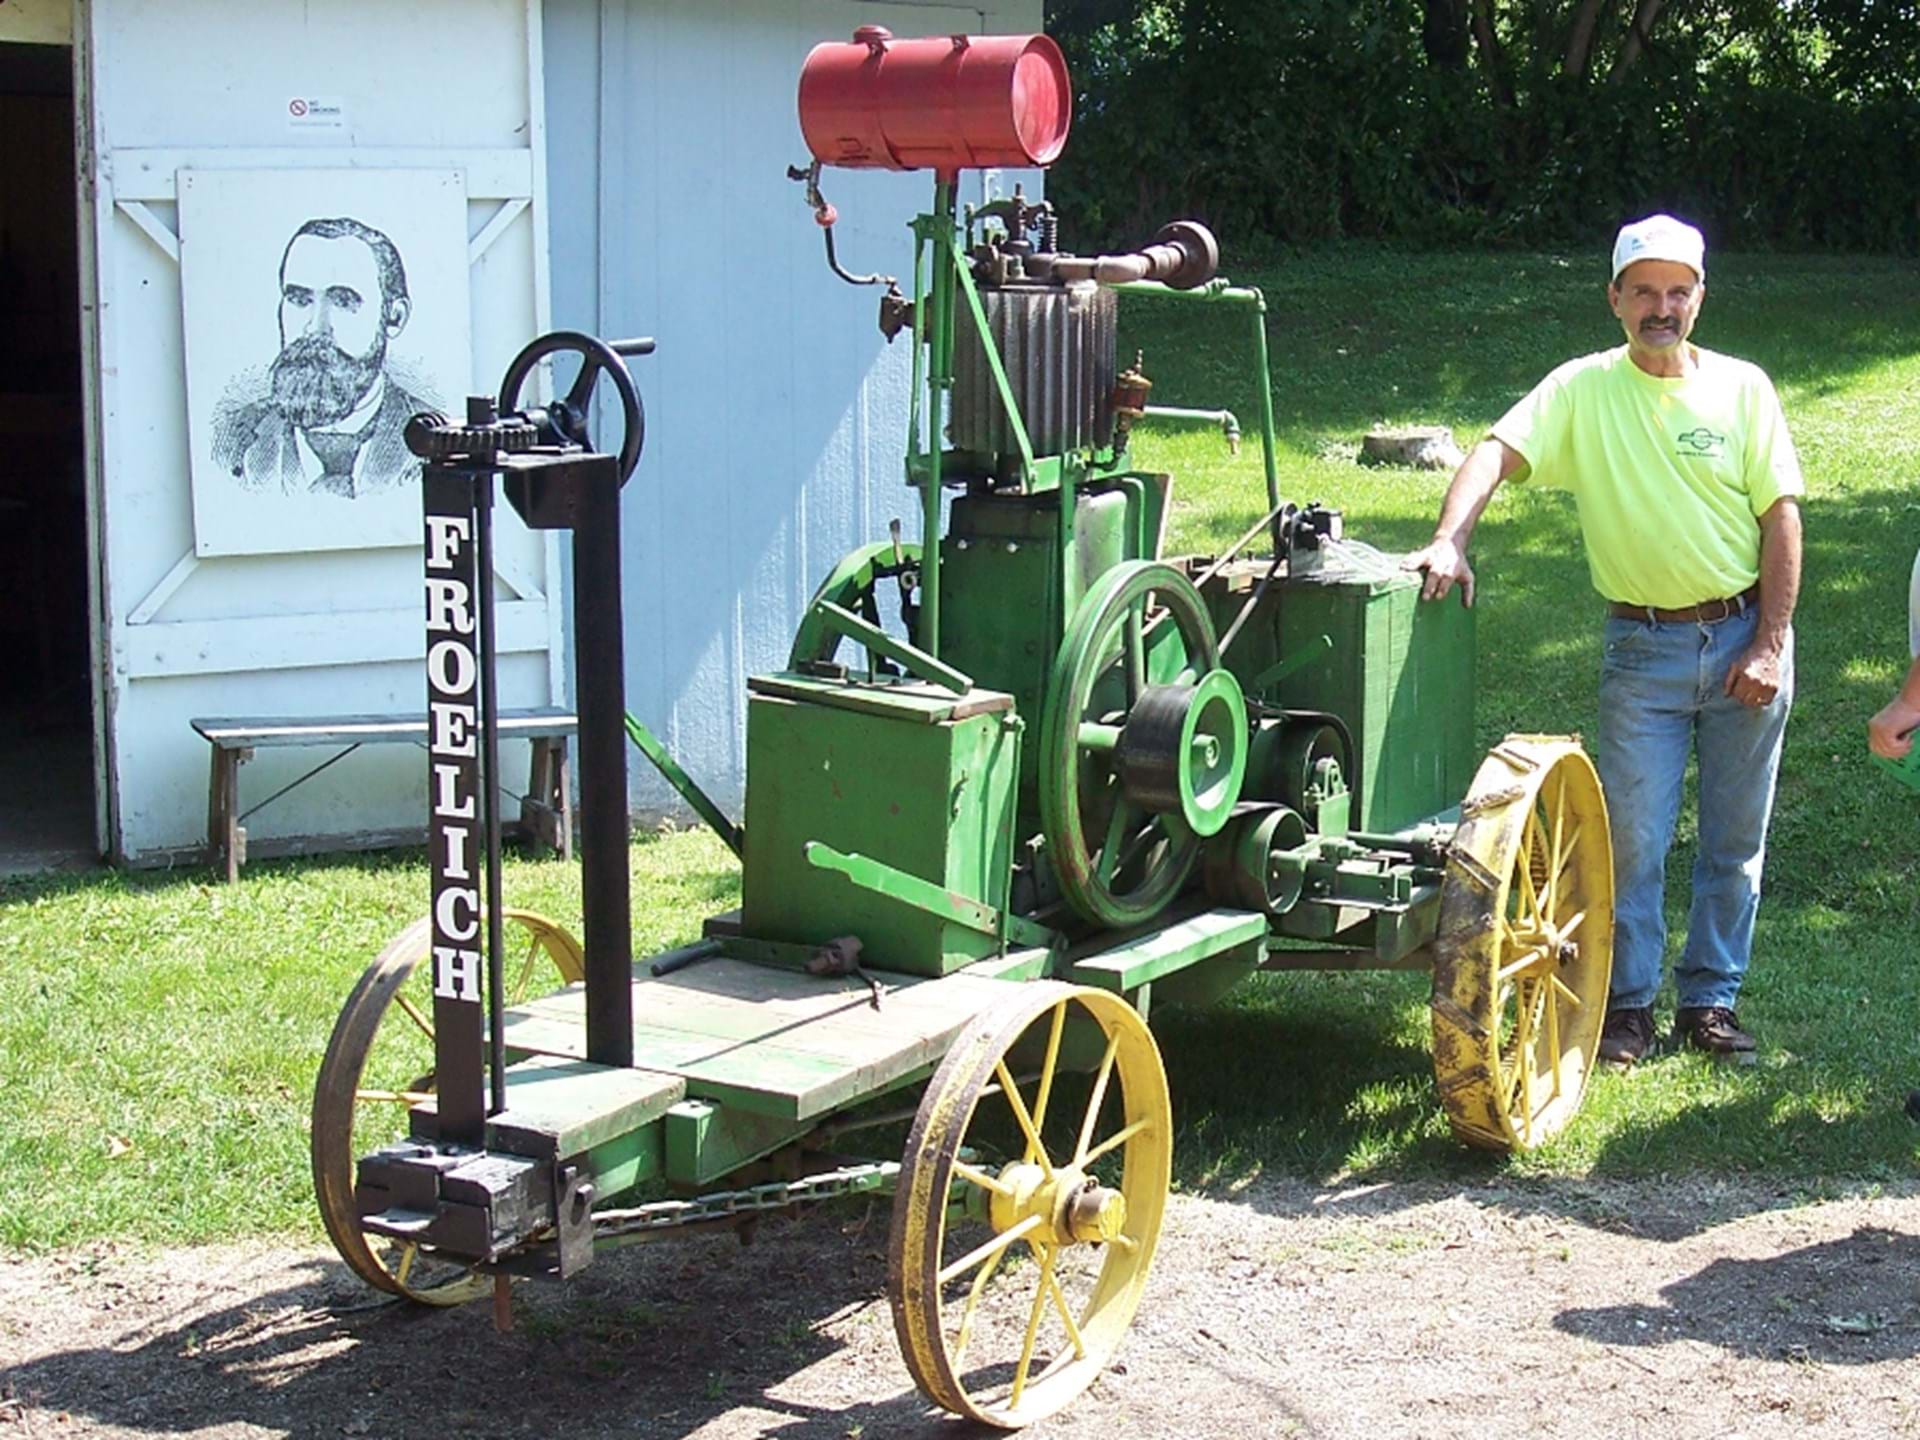 Froelich Tractor Replica by Blacksmith Shop